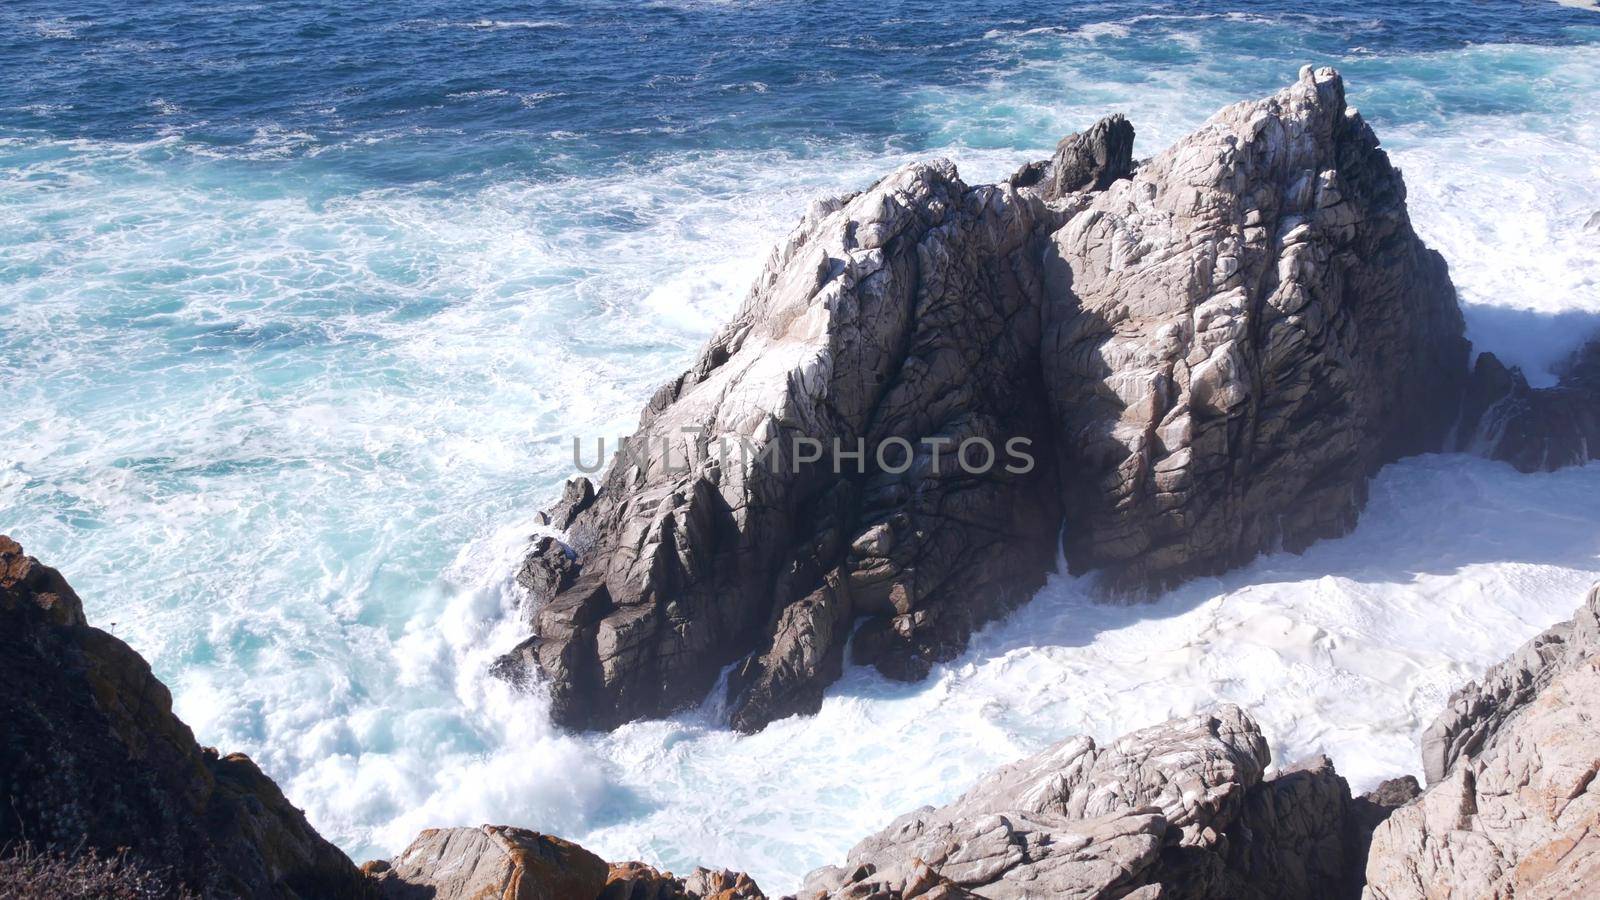 Rock crag of cliff, ocean beach, Point Lobos, California coast. Waves crashing. by DogoraSun